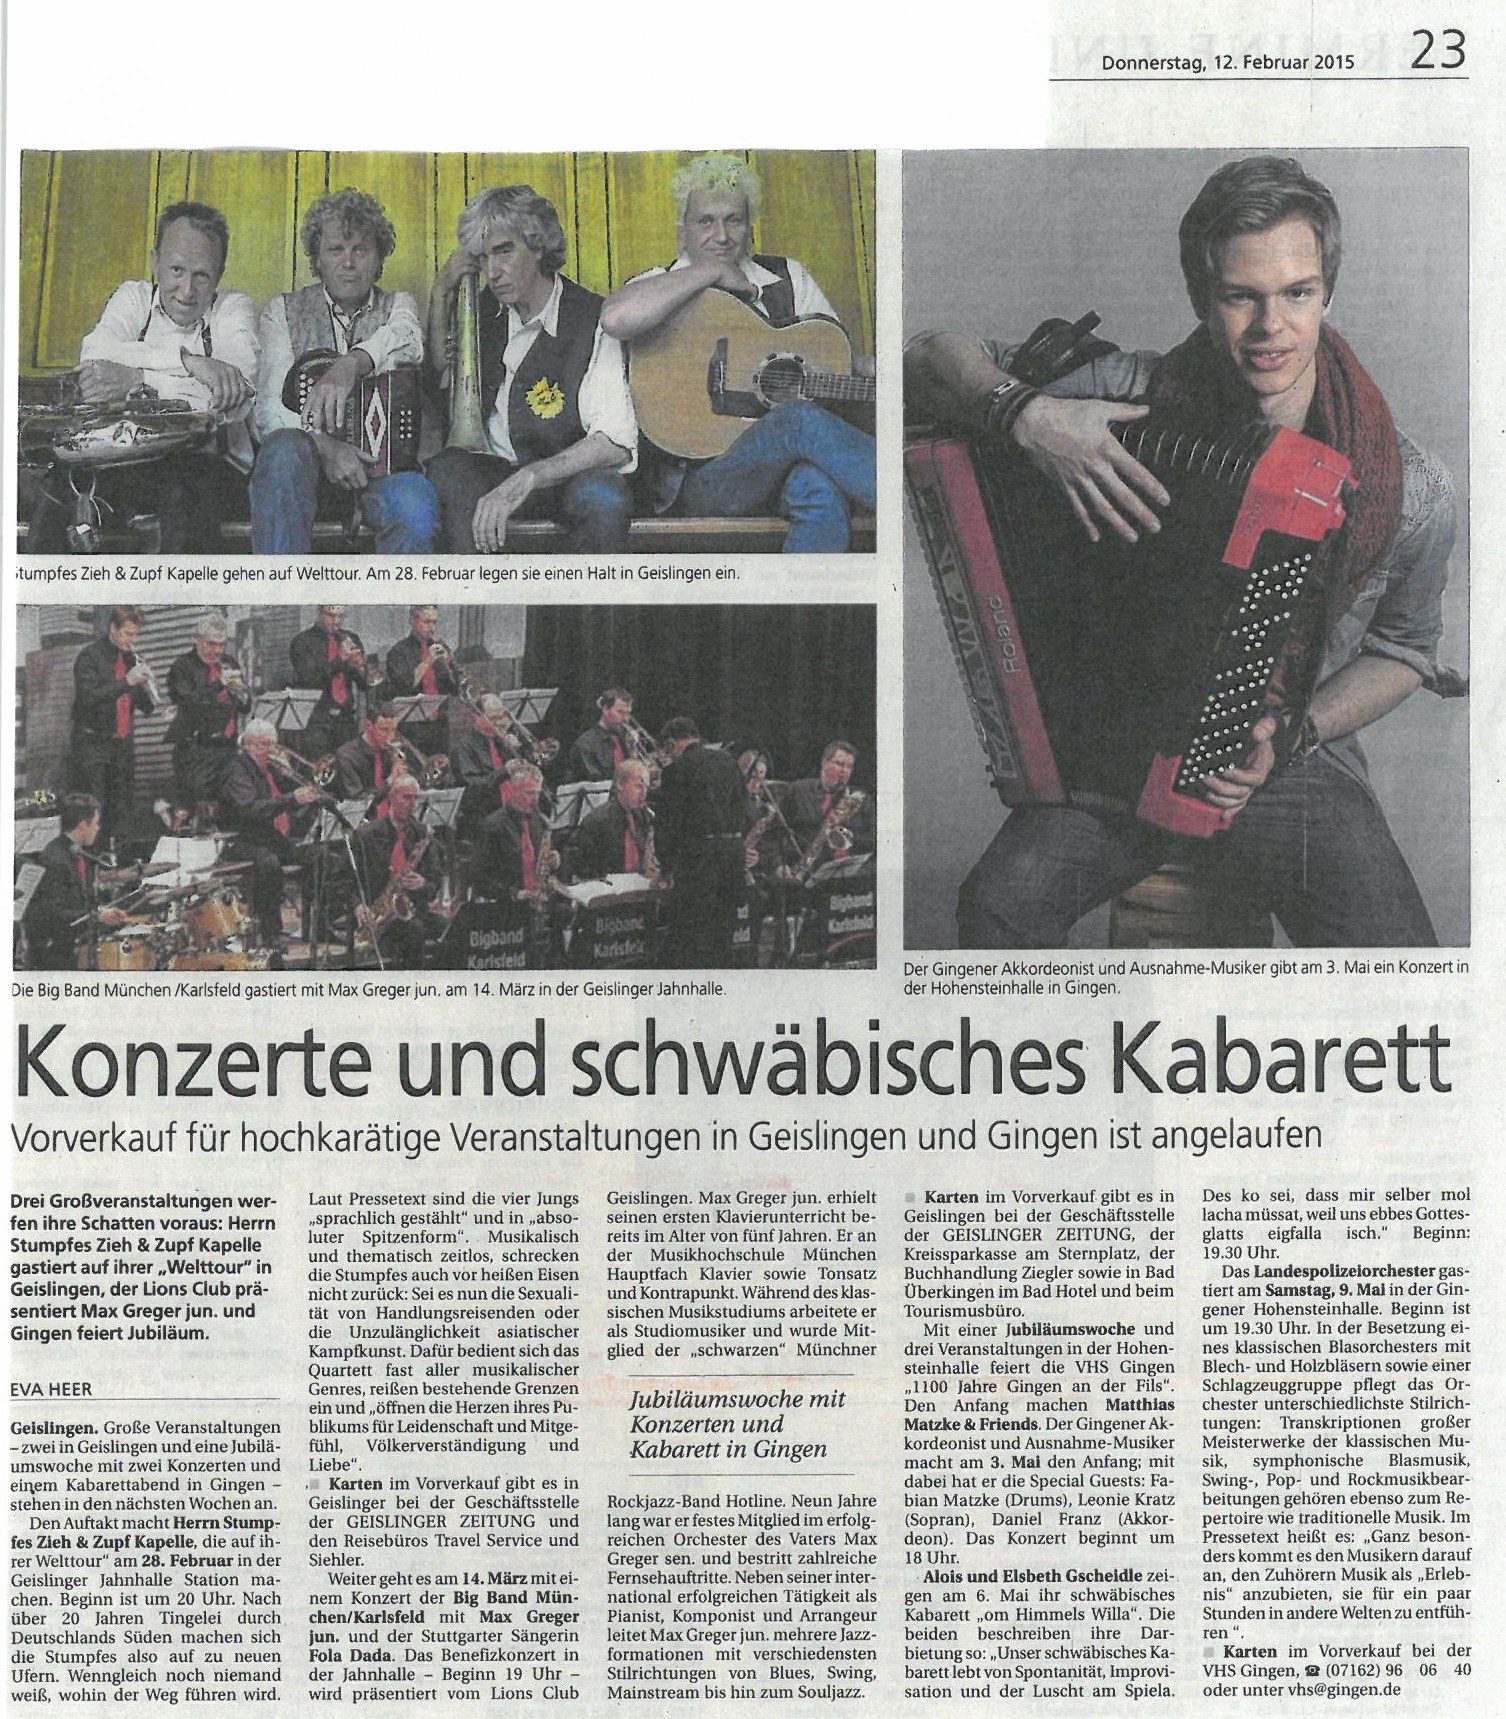  Konzerte und schwäbisches Kabarett 